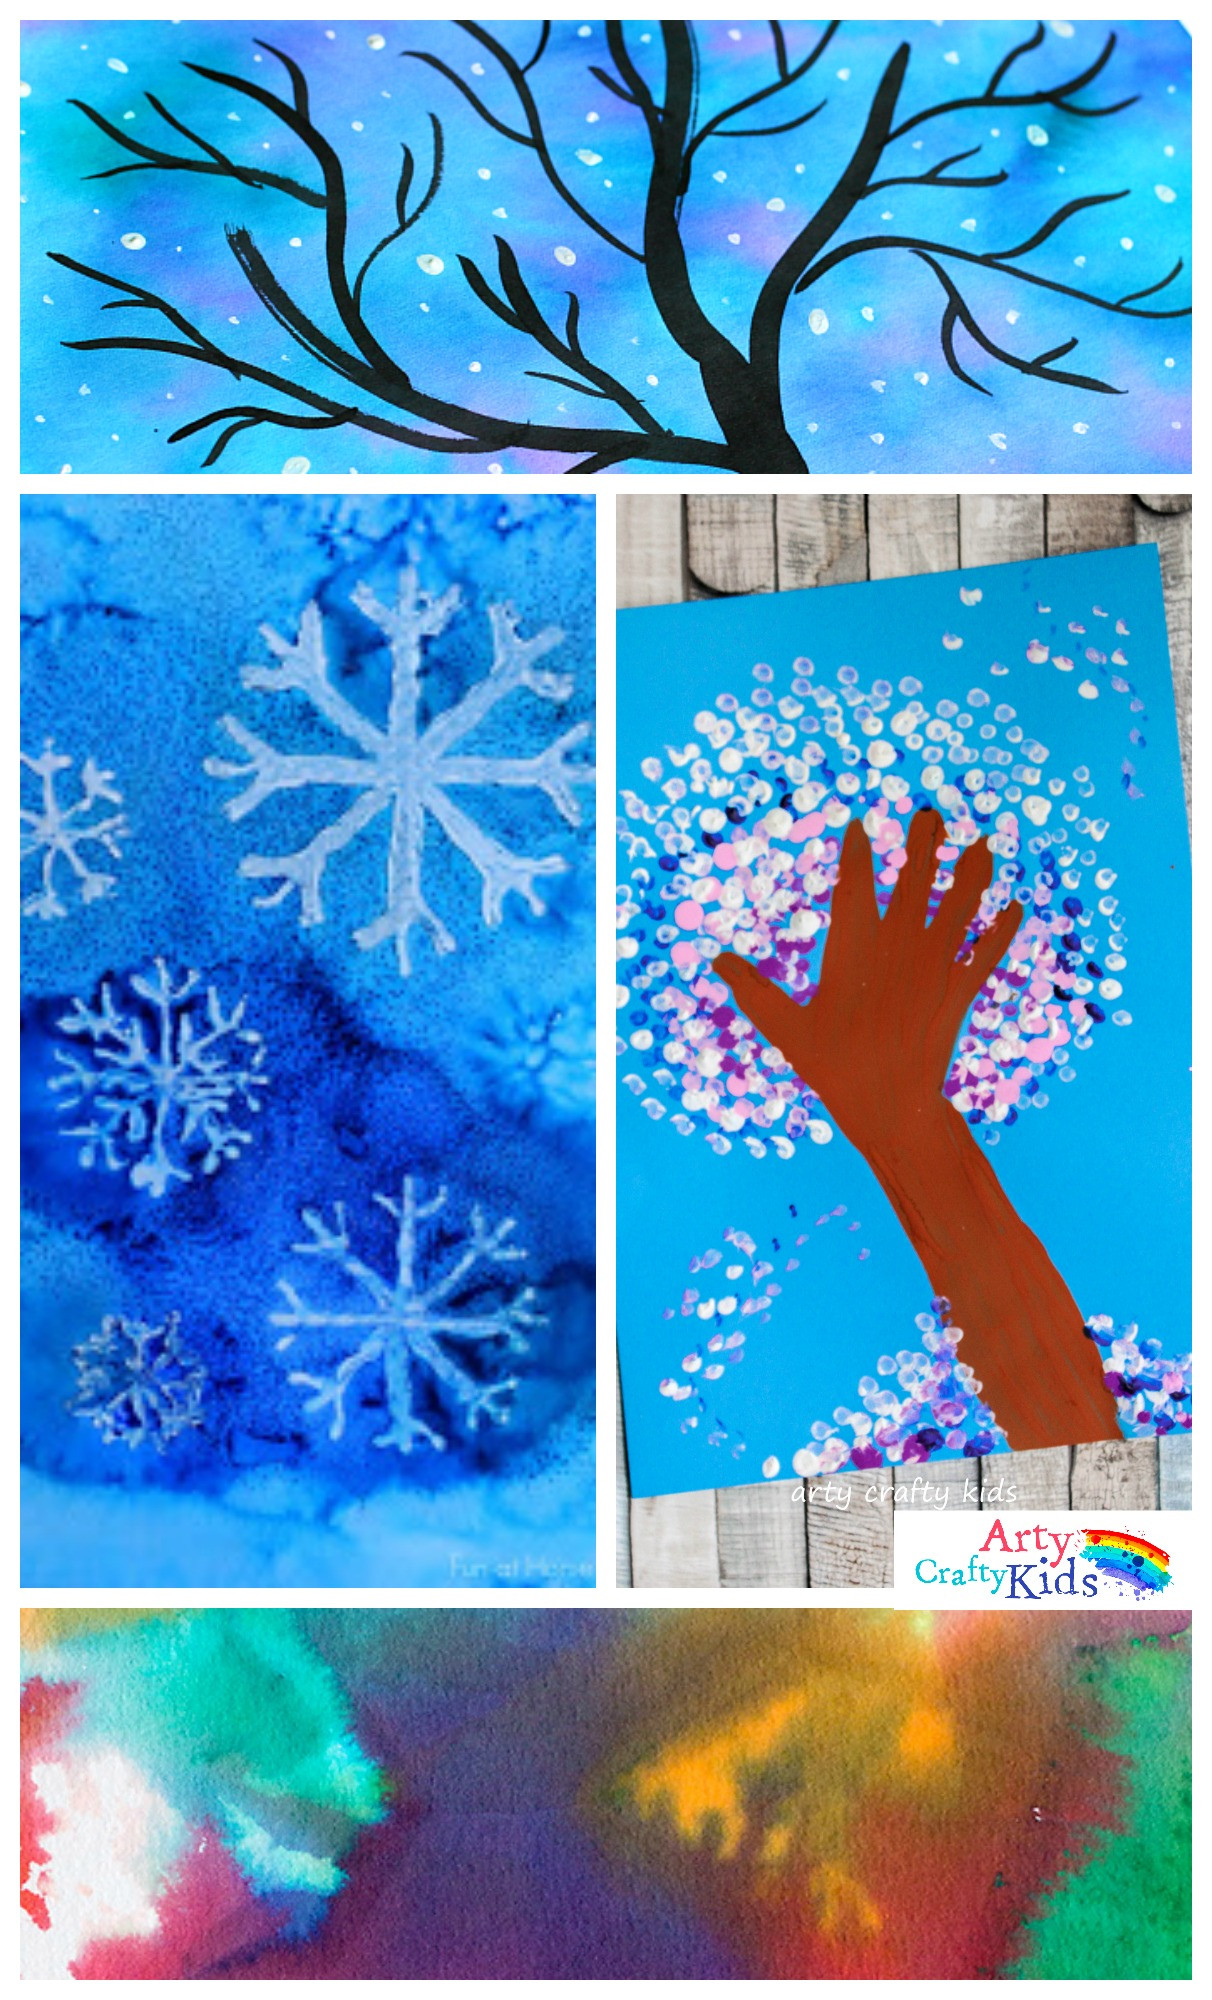 Winter Projects For Kids
 14 Wonderful Winter Art Projects for Kids Arty Crafty Kids